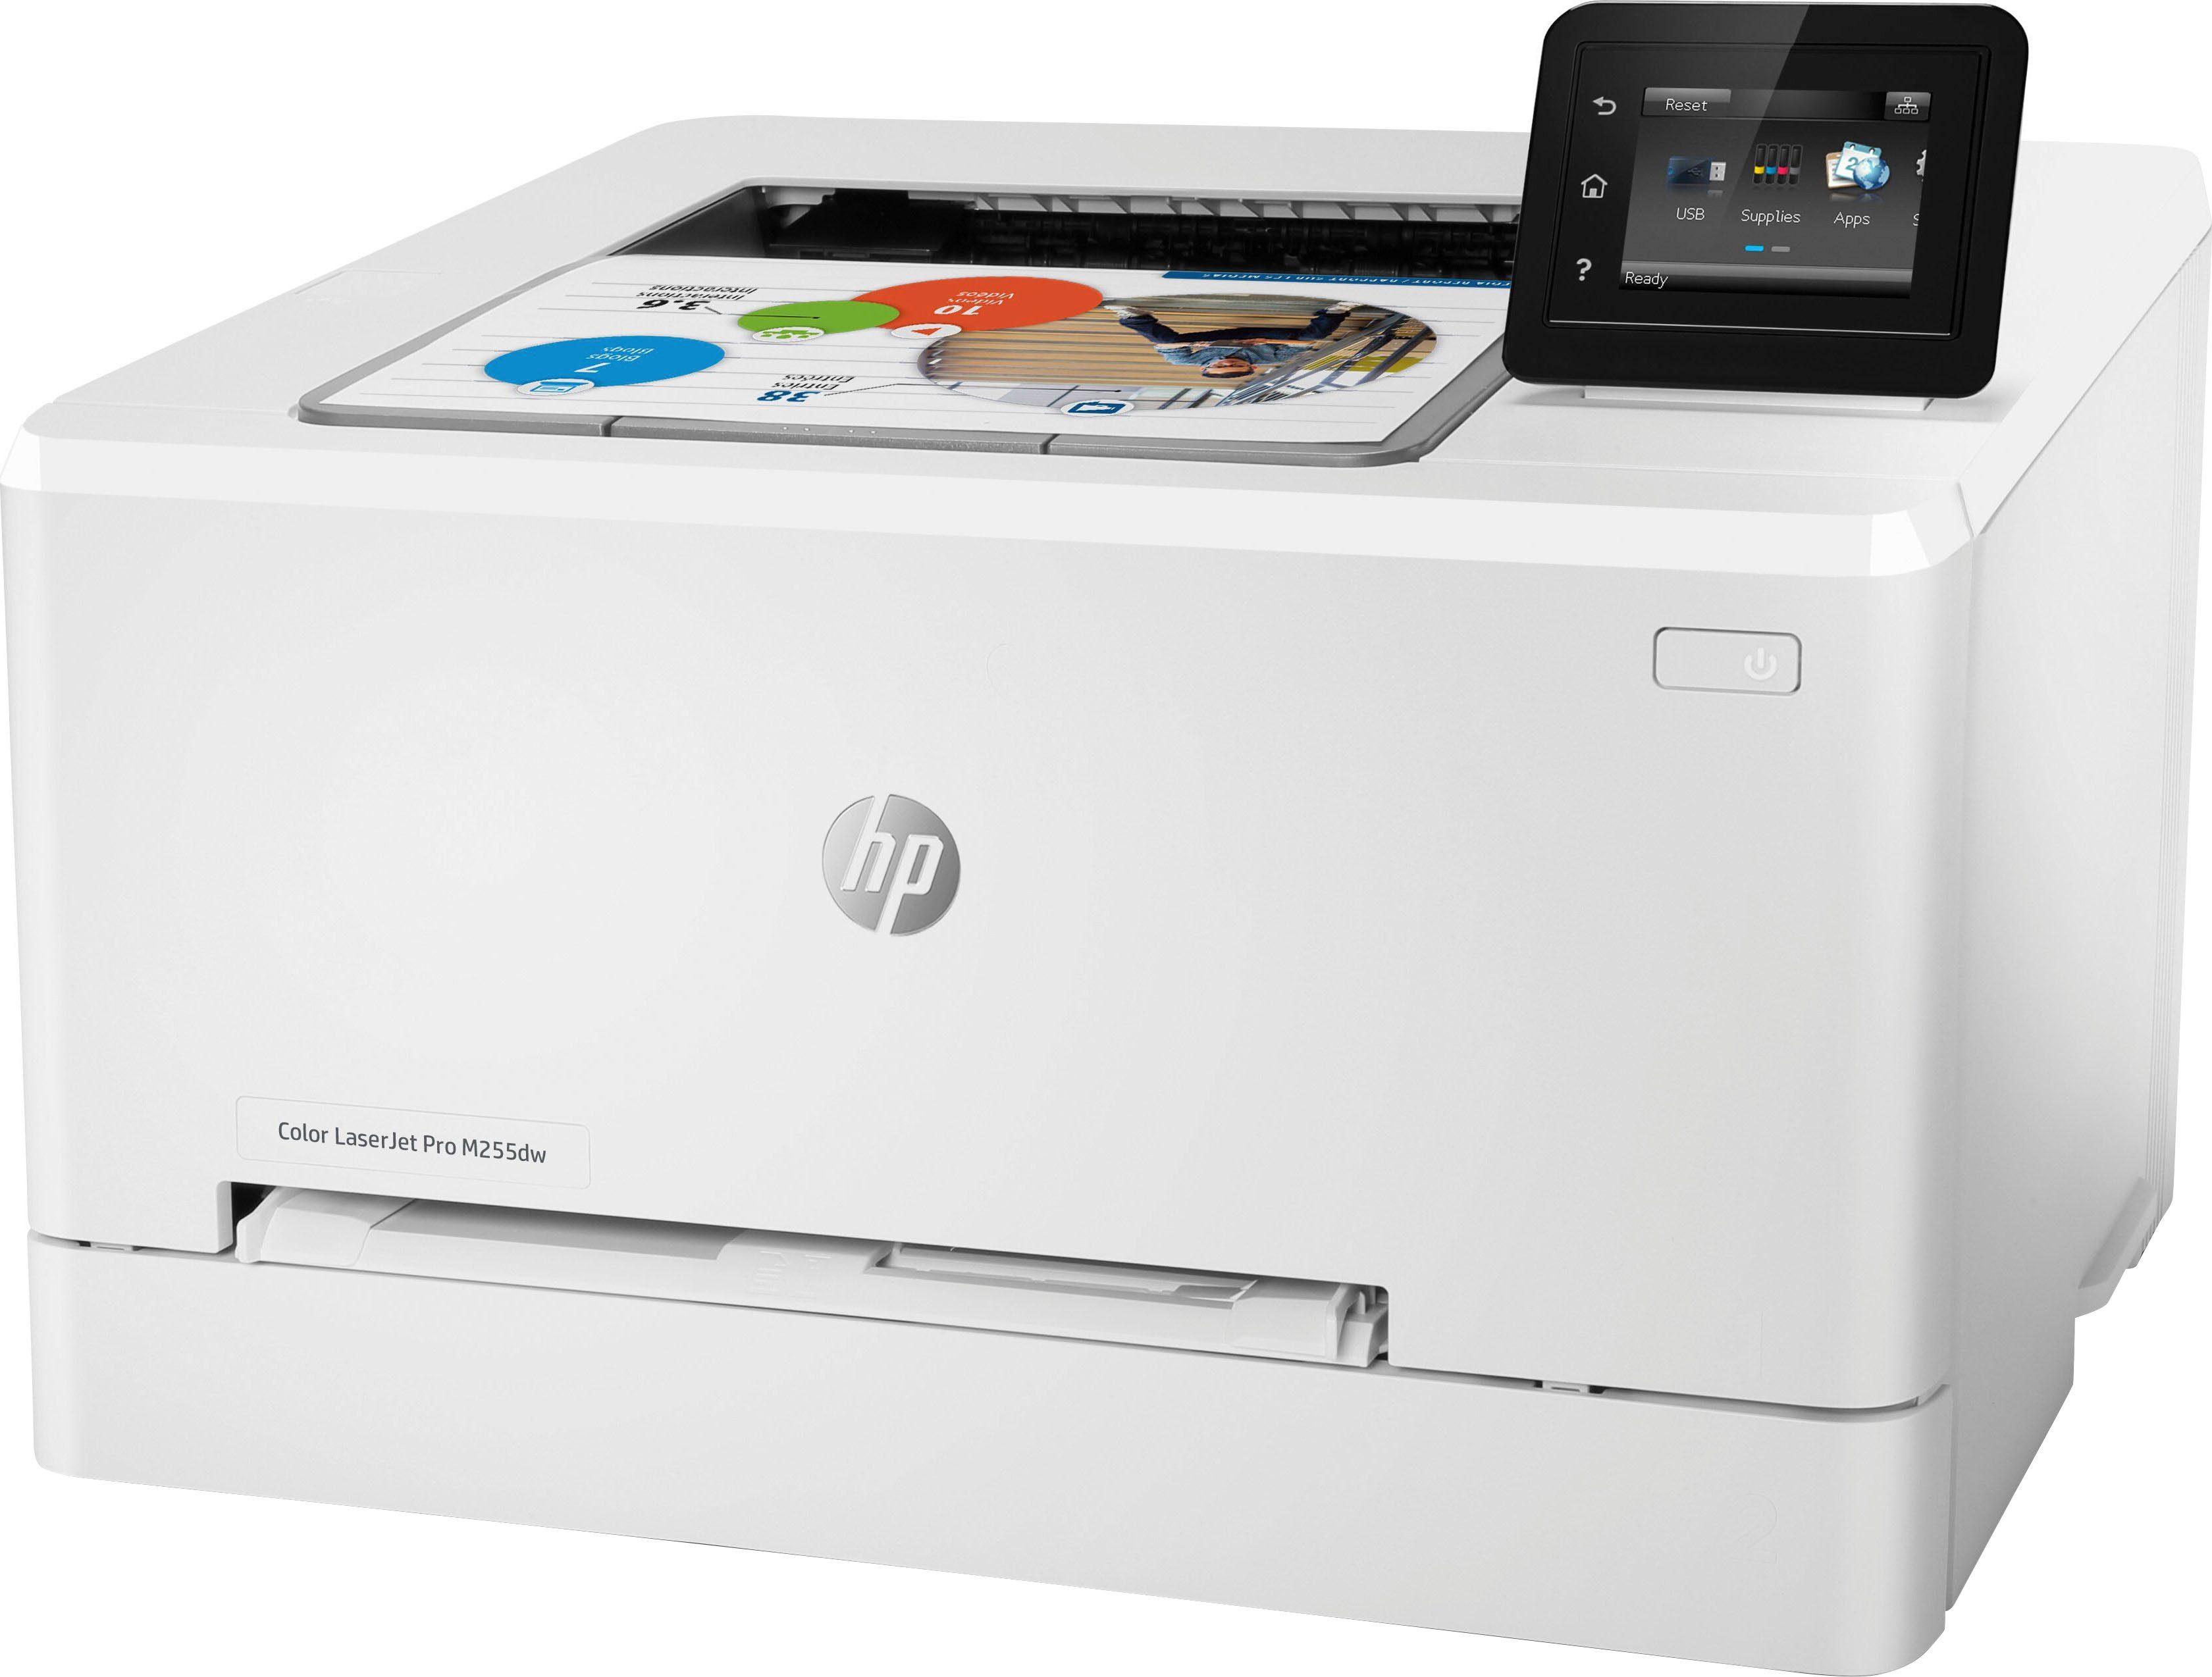 HP+ Direct, Pro (WLAN Multifunktionsdrucker, HP LaserJet Color Instant Wi-Fi Ink (Wi-Fi), kompatibel) M255dw